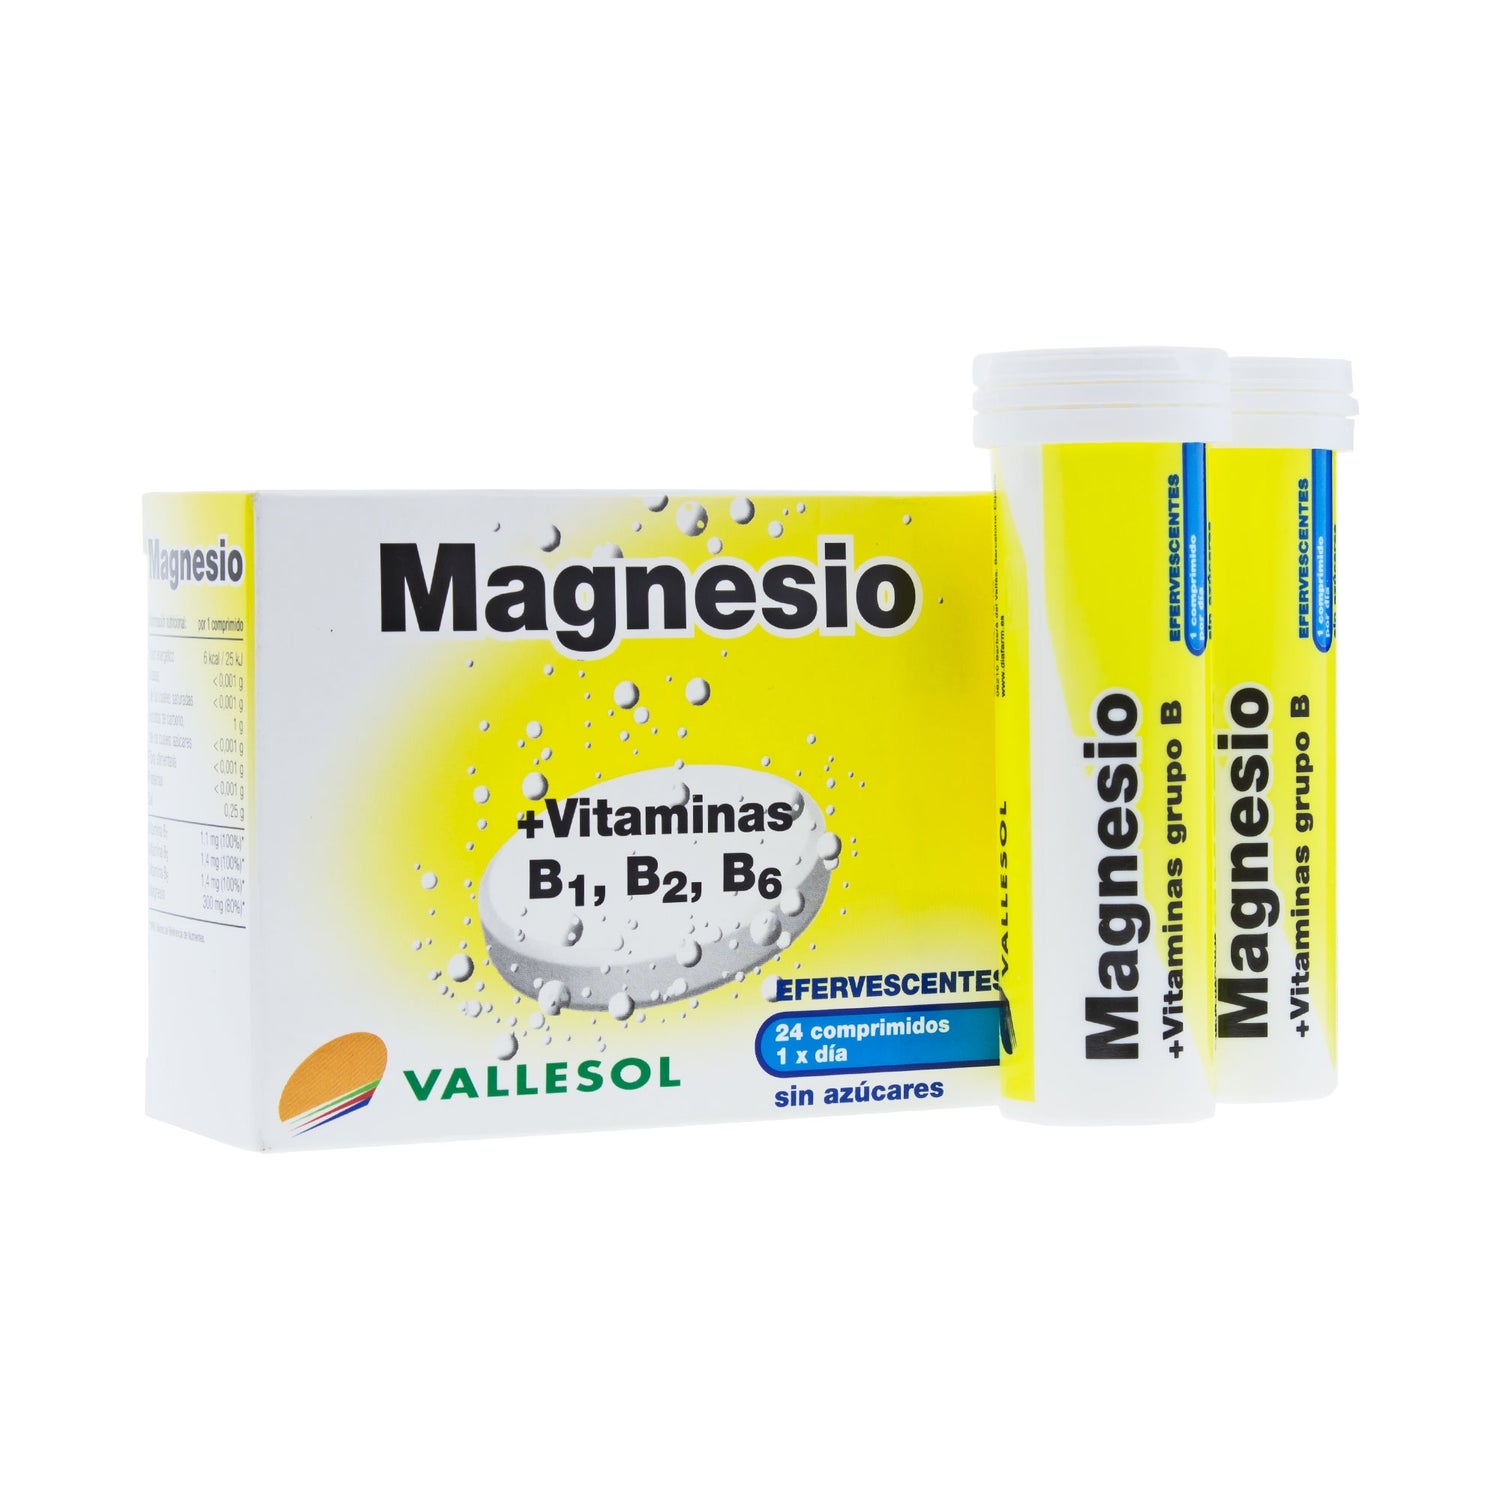 vallesol magnesio y vitaminas 24comp efervescentes